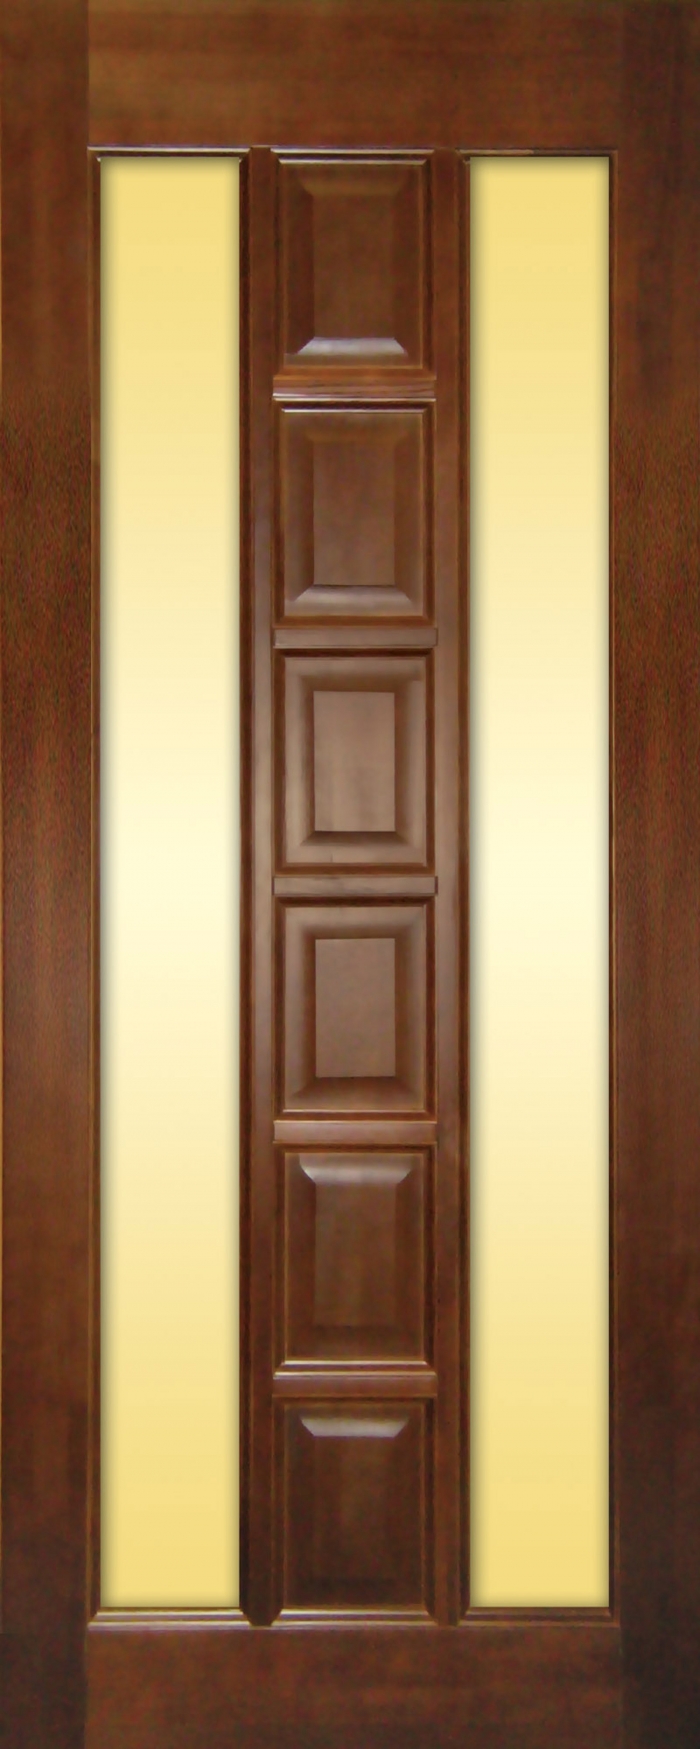 Межкомнатные деревянные двери

Чистый массив дерева, любой размер, любой фасон, любой цвет!

стоимость от 8500р за единицу (в цены входят полотно, дверная коробка, покраска)